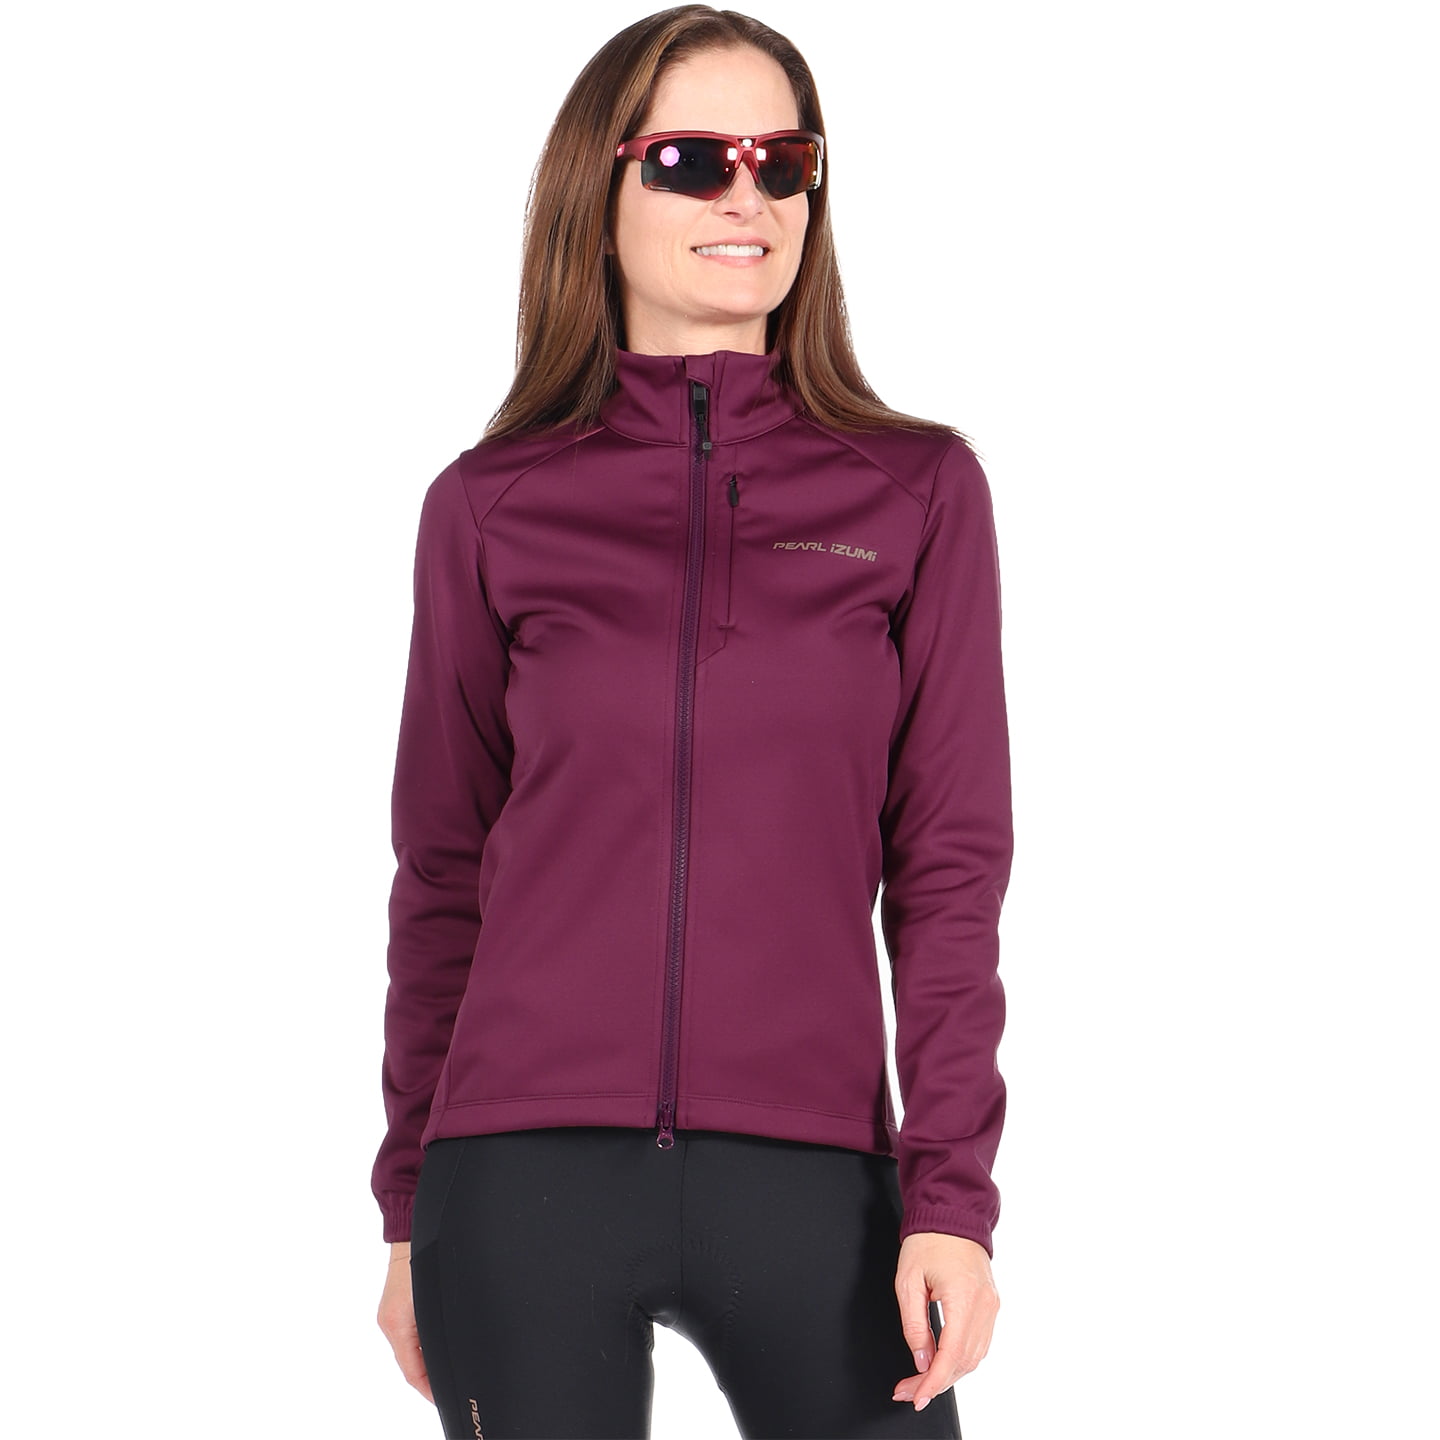 PEARL IZUMI AmFIB Lite Women’s Winter Jacket Women’s Thermal Jacket, size S, Winter jacket, Cycle clothing